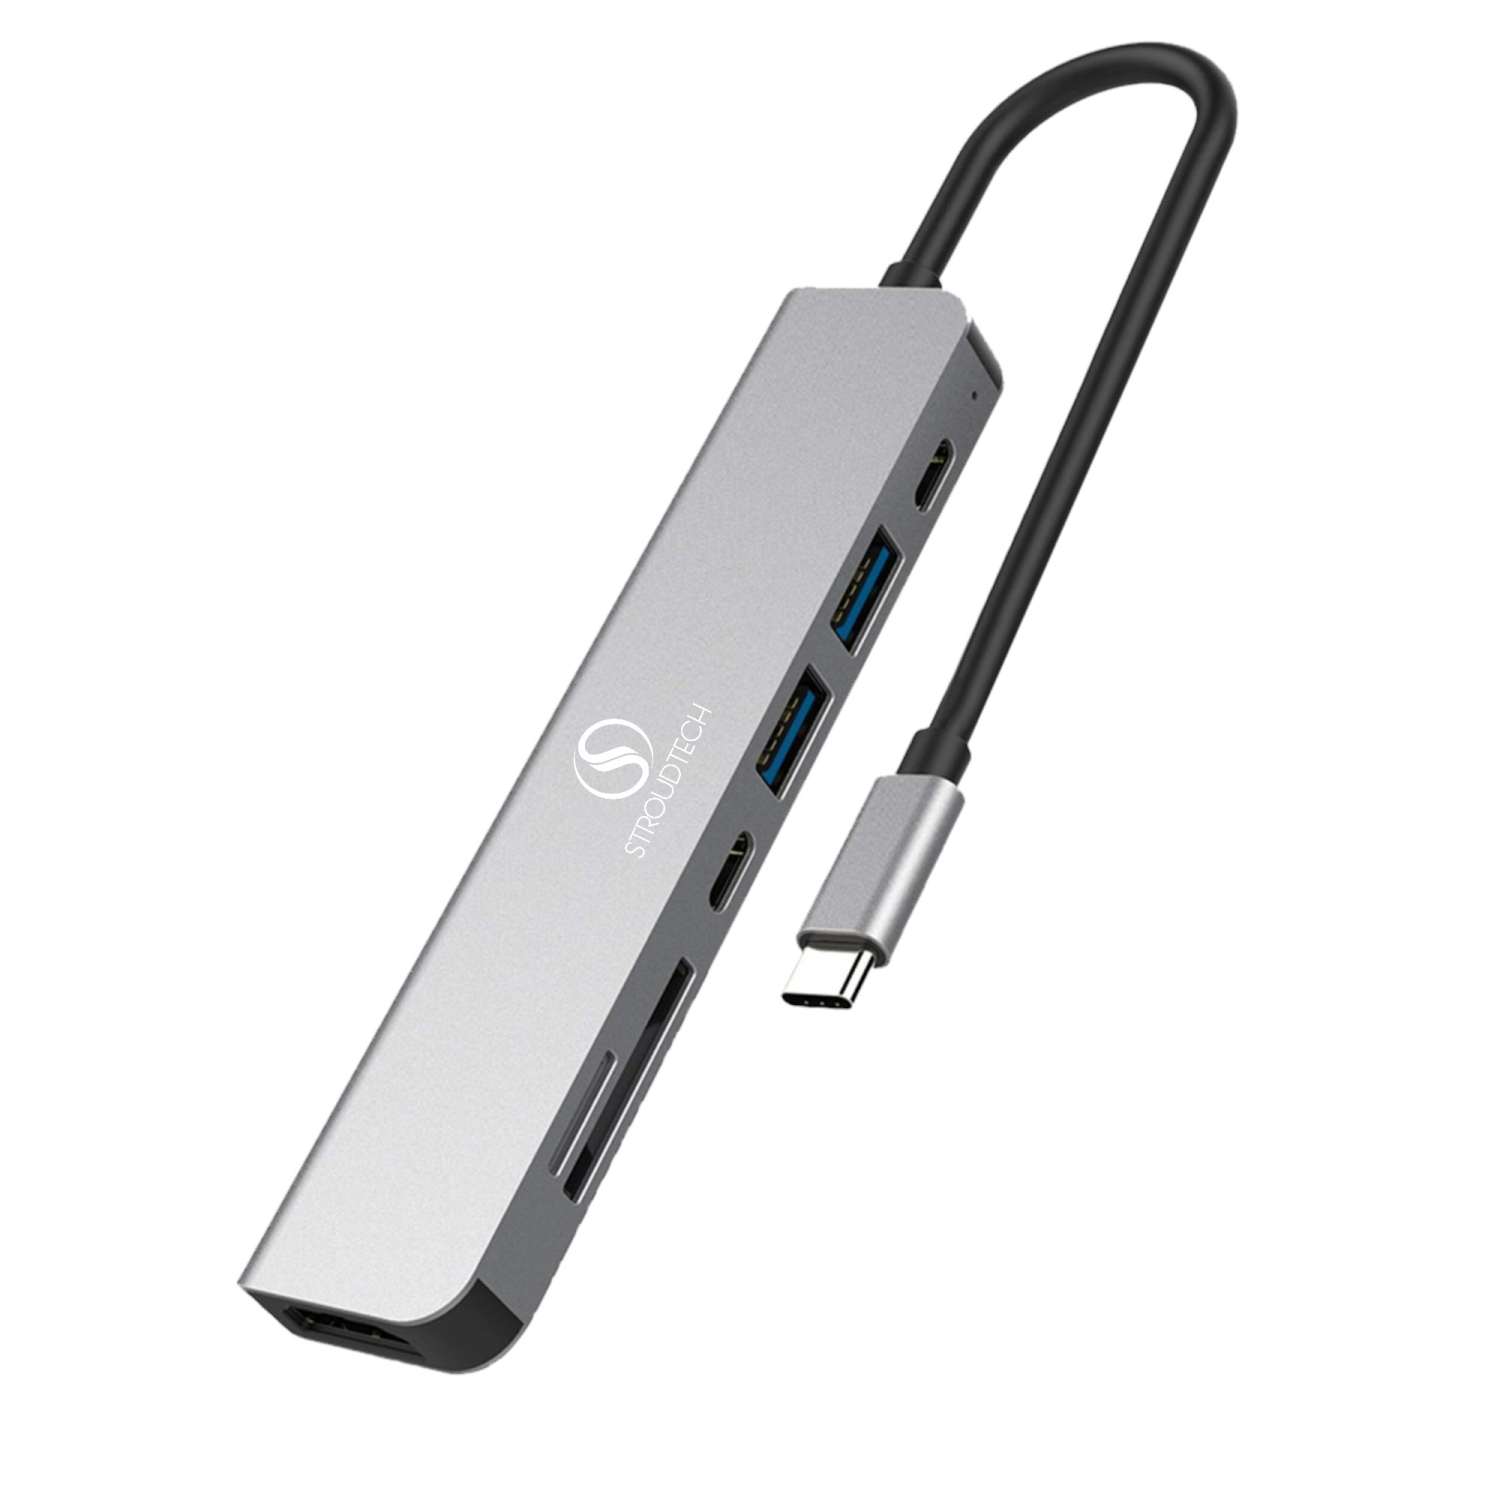 ラッピング無料 USB Hub C Amazon ハブ USB C アダプタ Dockteck